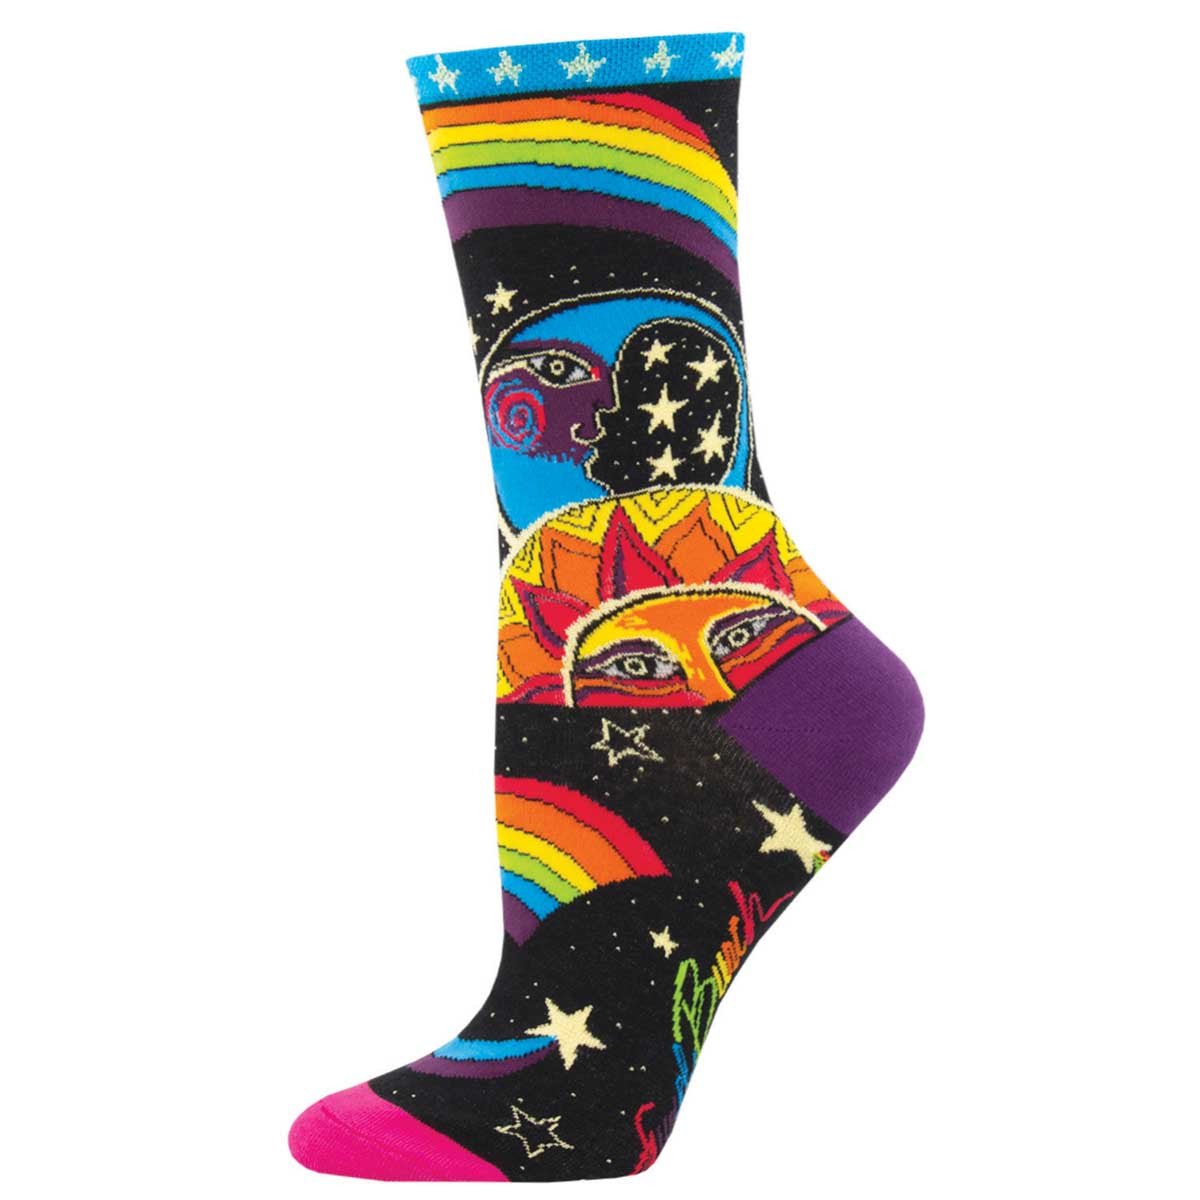 Mermaid Socks, magical gift - Rainbow Socks